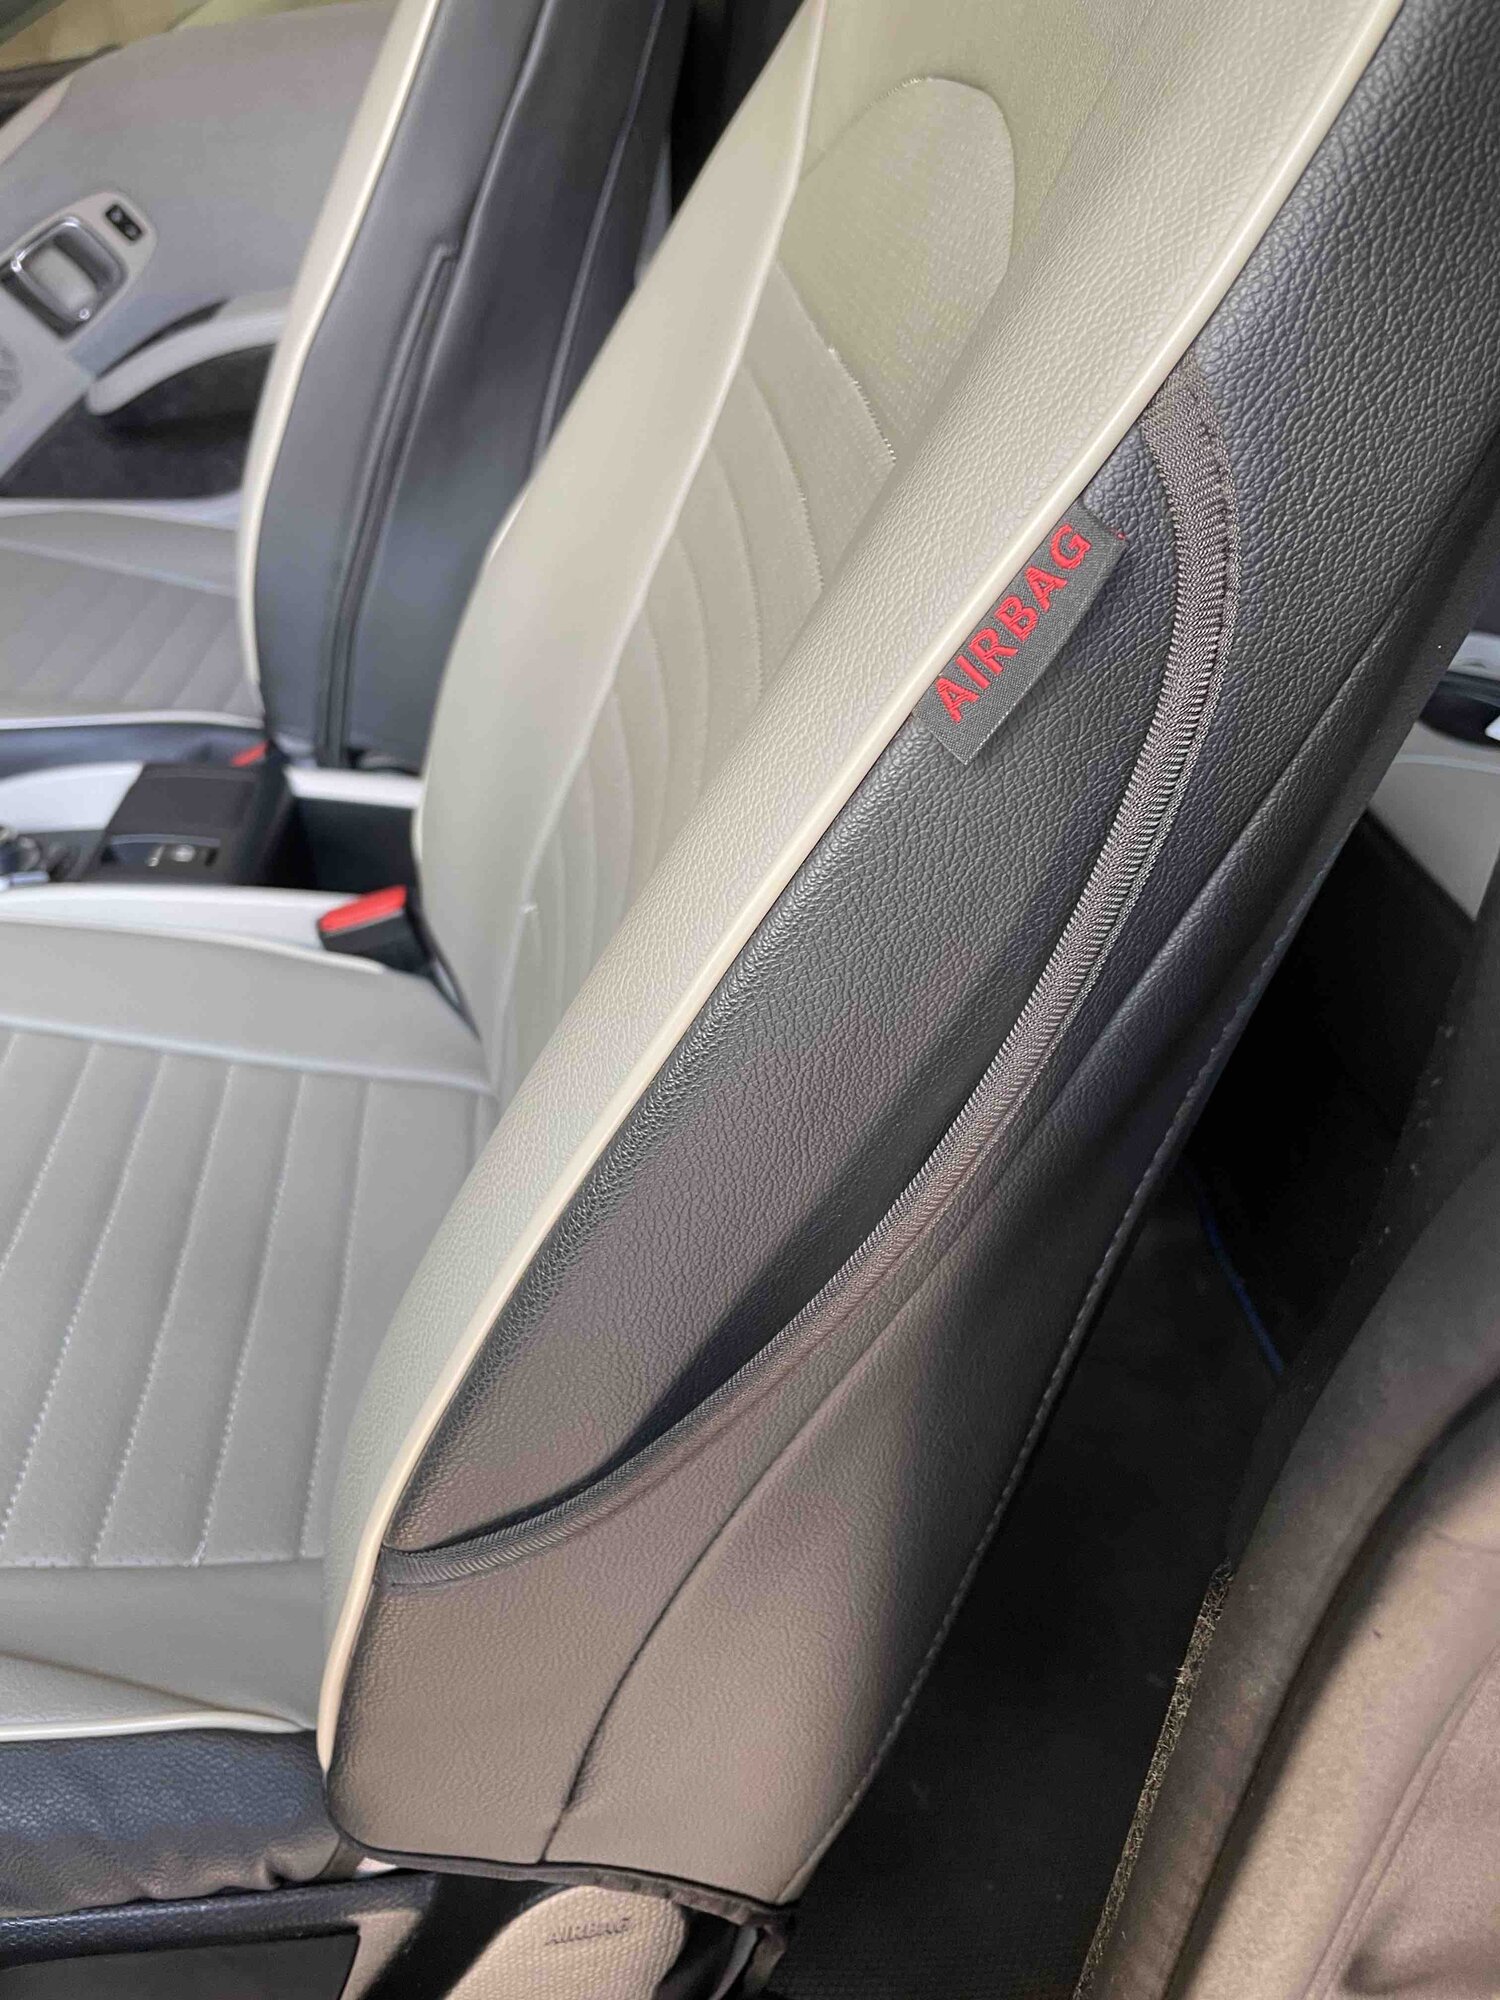 TAPTES® Upgrade Headrest Neck Rest Cushion for Tesla Model S Model 3 M –  TAPTES -1000+ Tesla Accessories